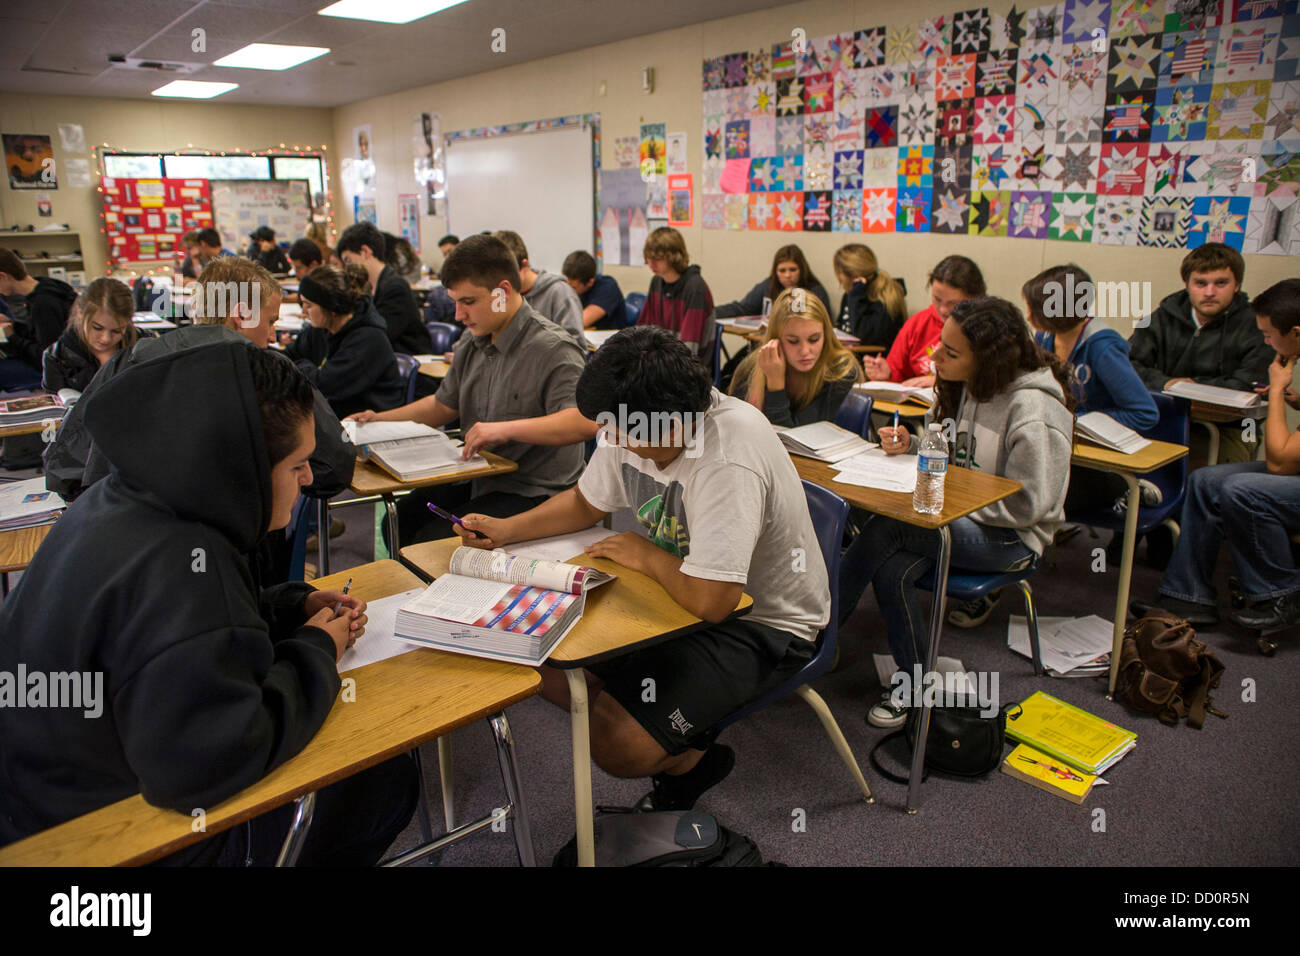 Los estudiantes de una escuela secundaria de California trabajan juntos durante un ejercicio de lectura utilizando una antología literaria Foto de stock